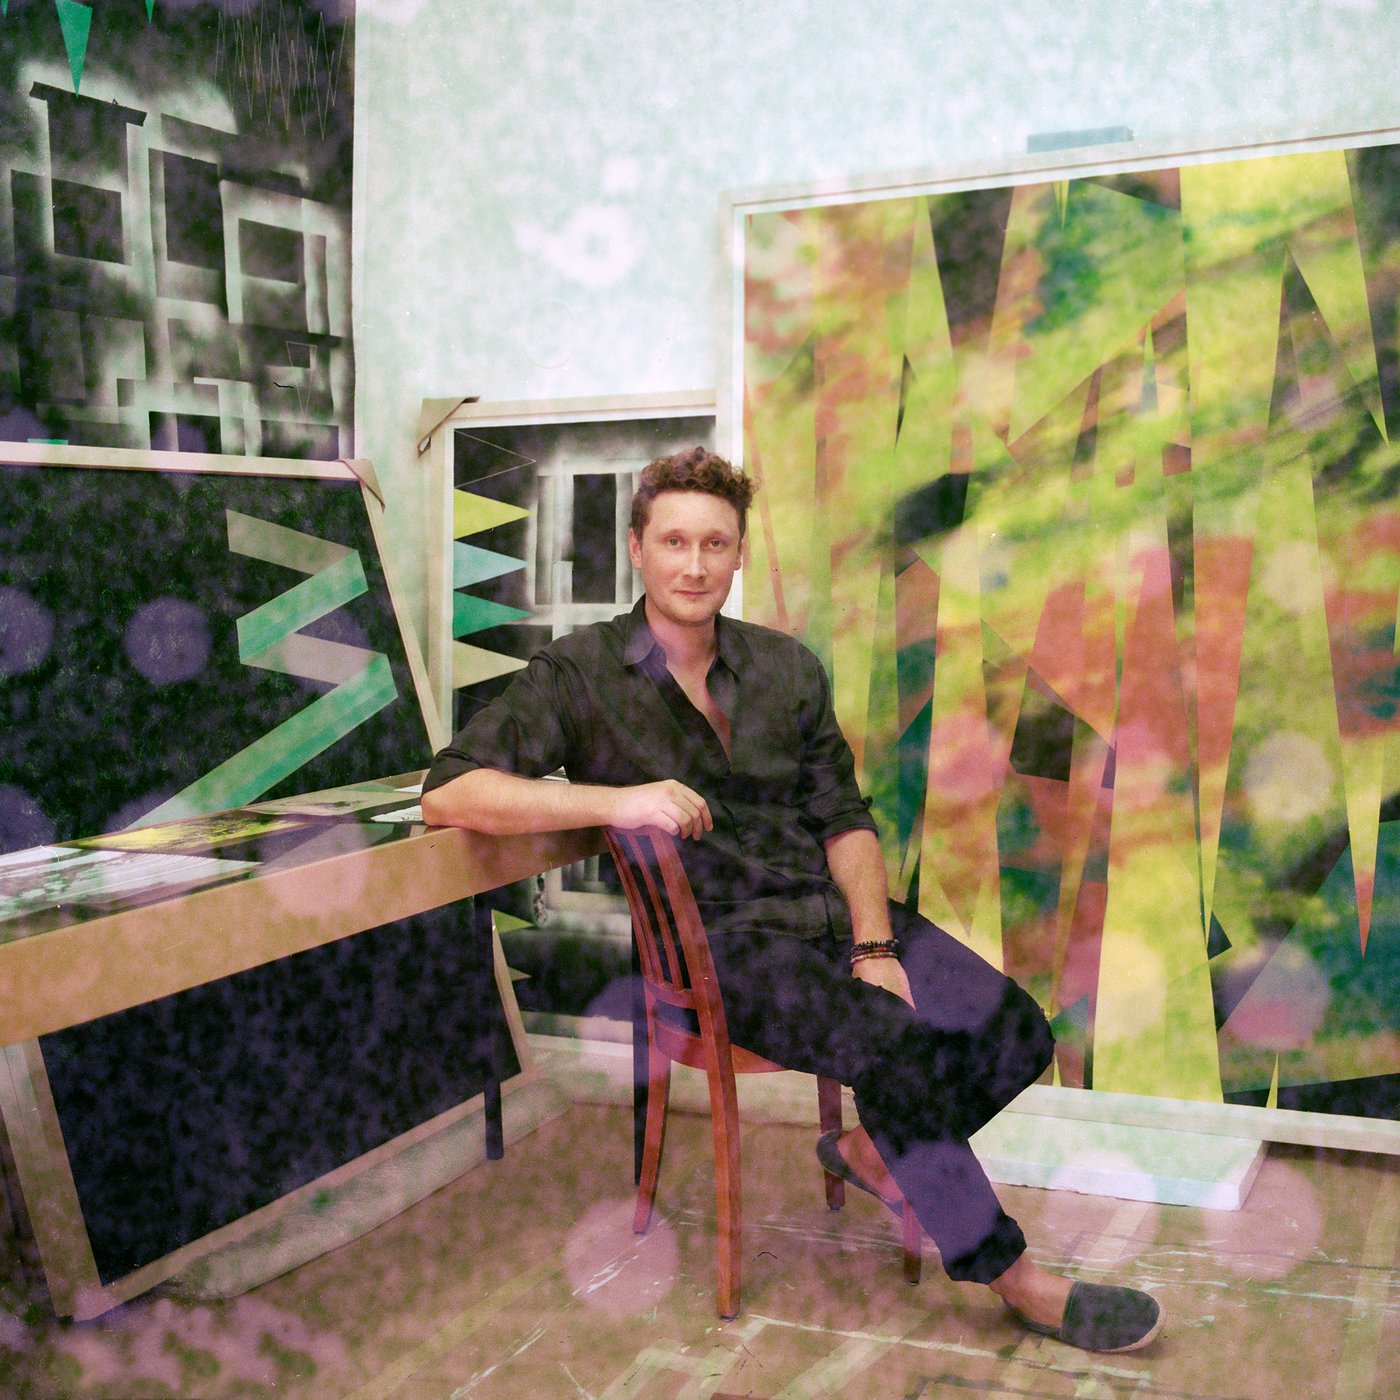 Mann in schwarzer Kleidung sitzt auf einem Stuhl in der Mitte von lebensgroßen Kunstwerken